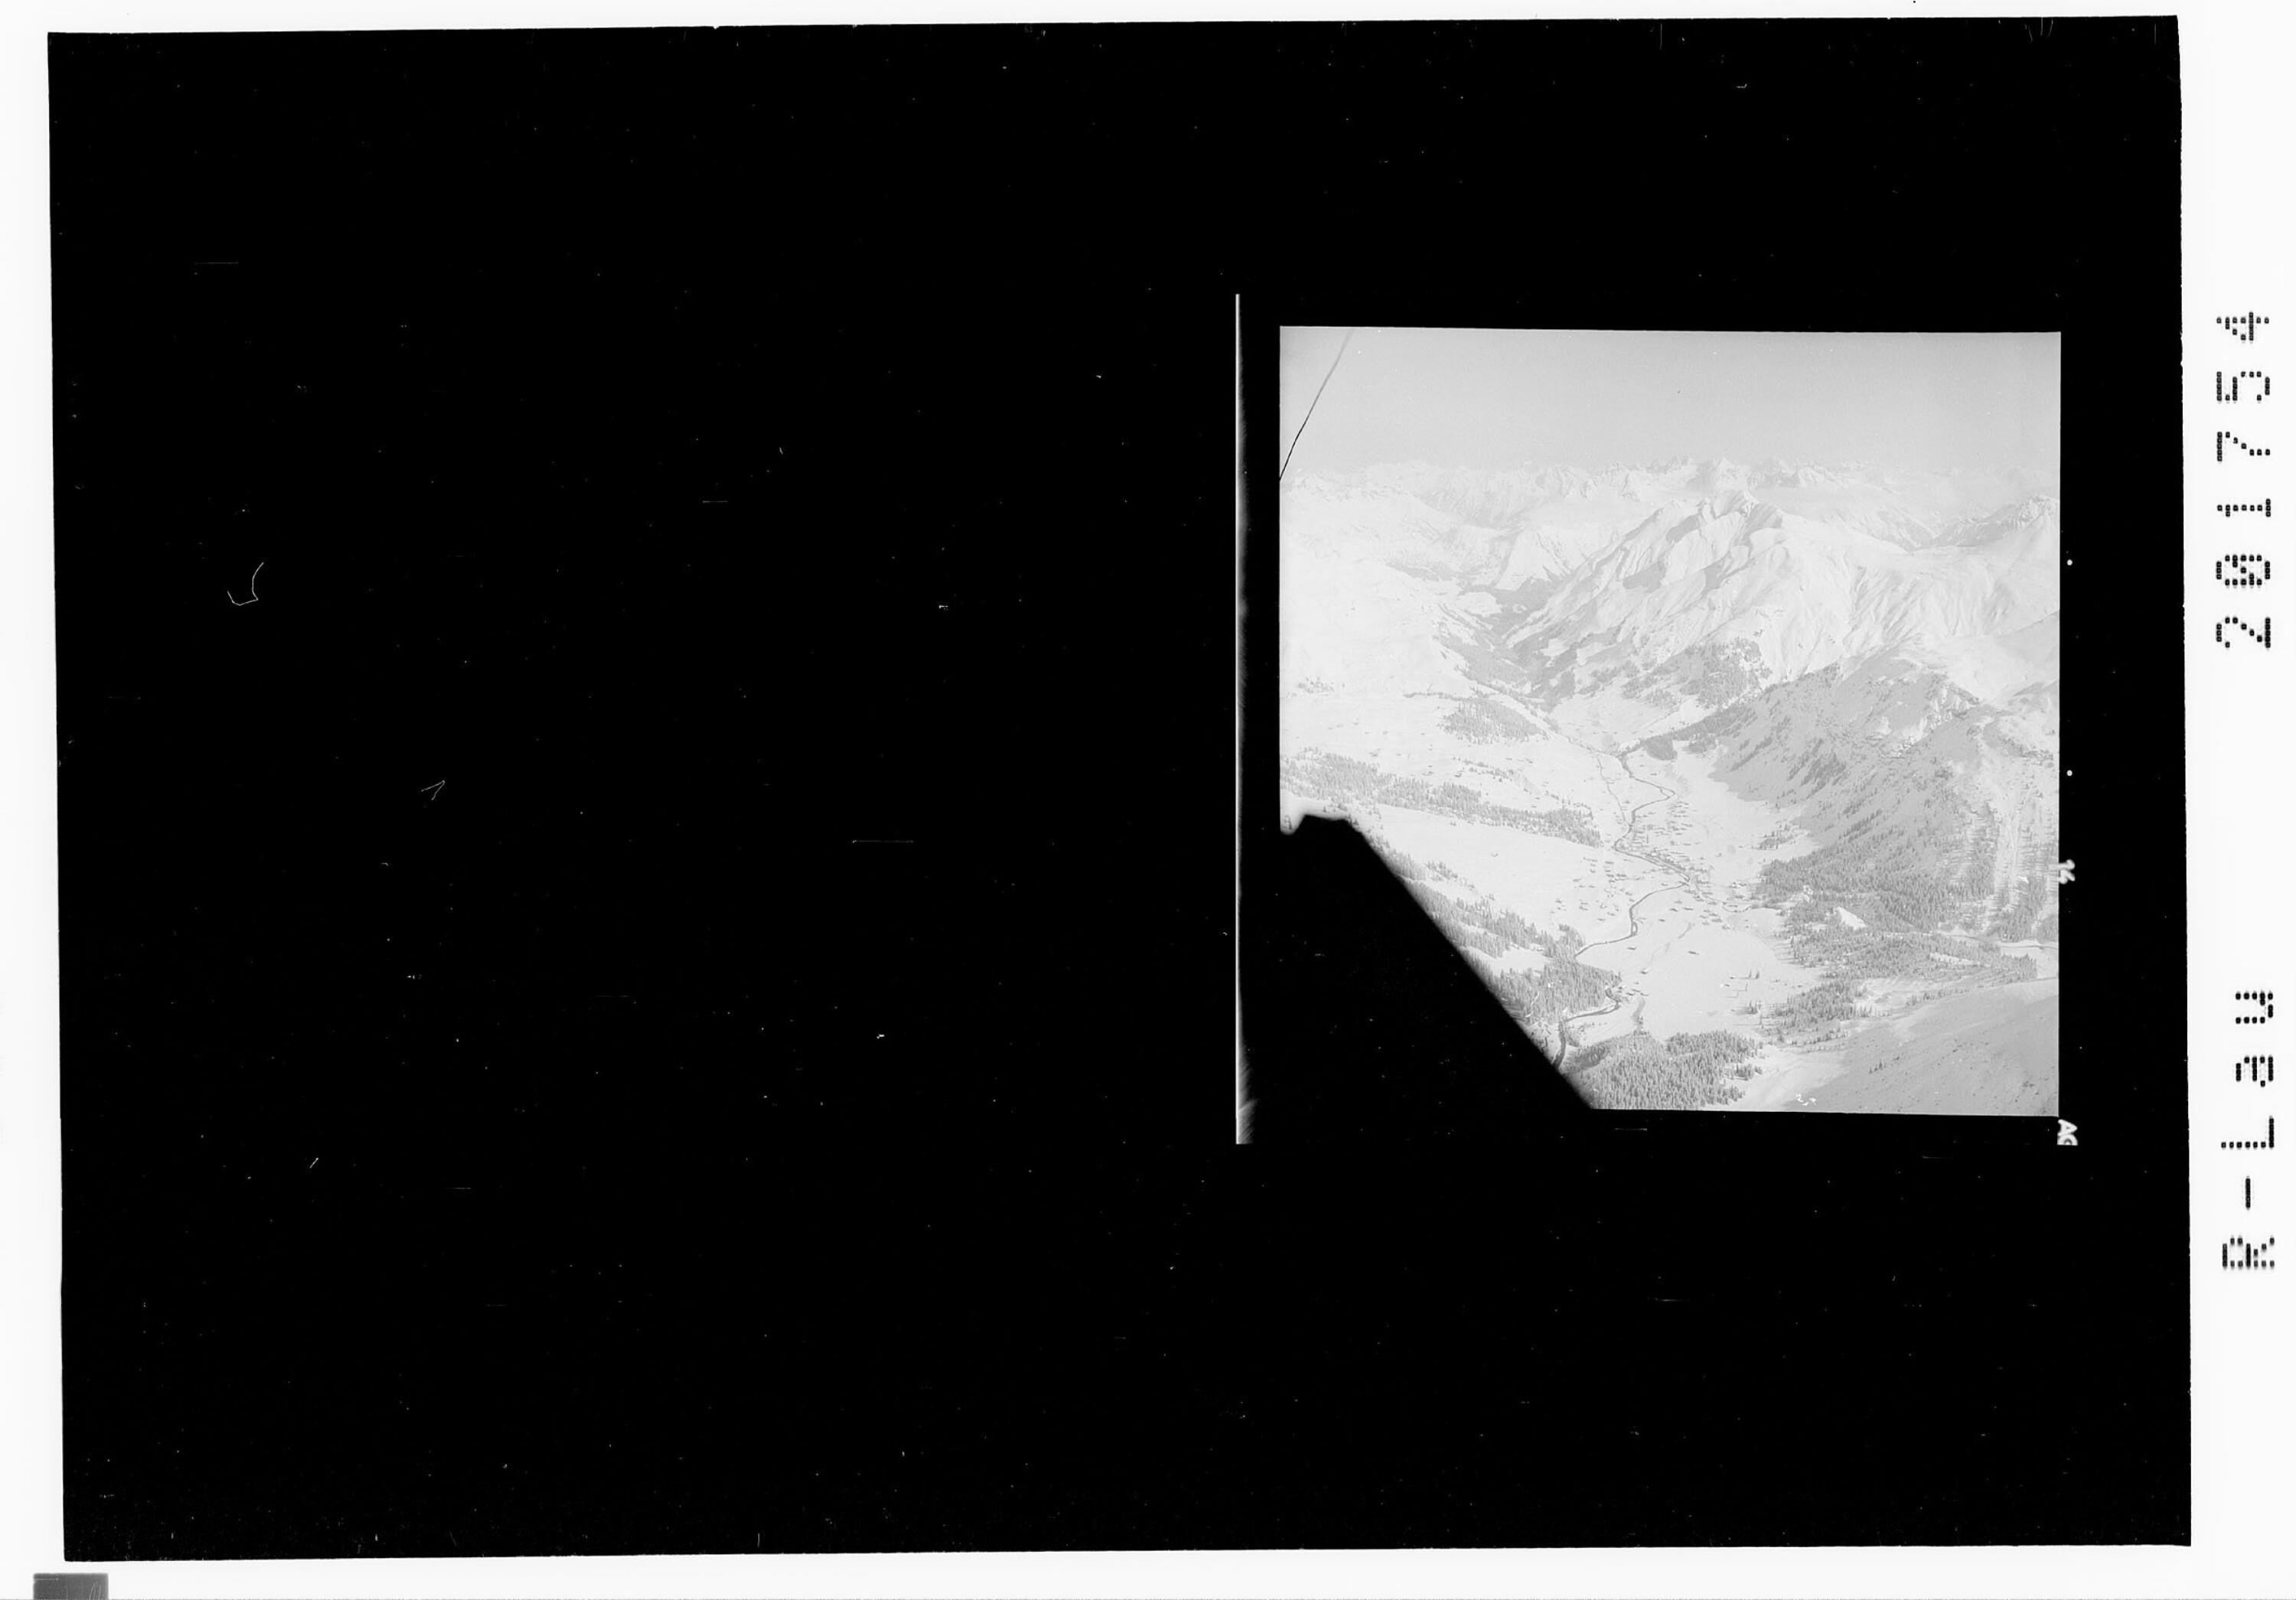 Lech am Arlberg 1447 m></div>


    <hr>
    <div class=